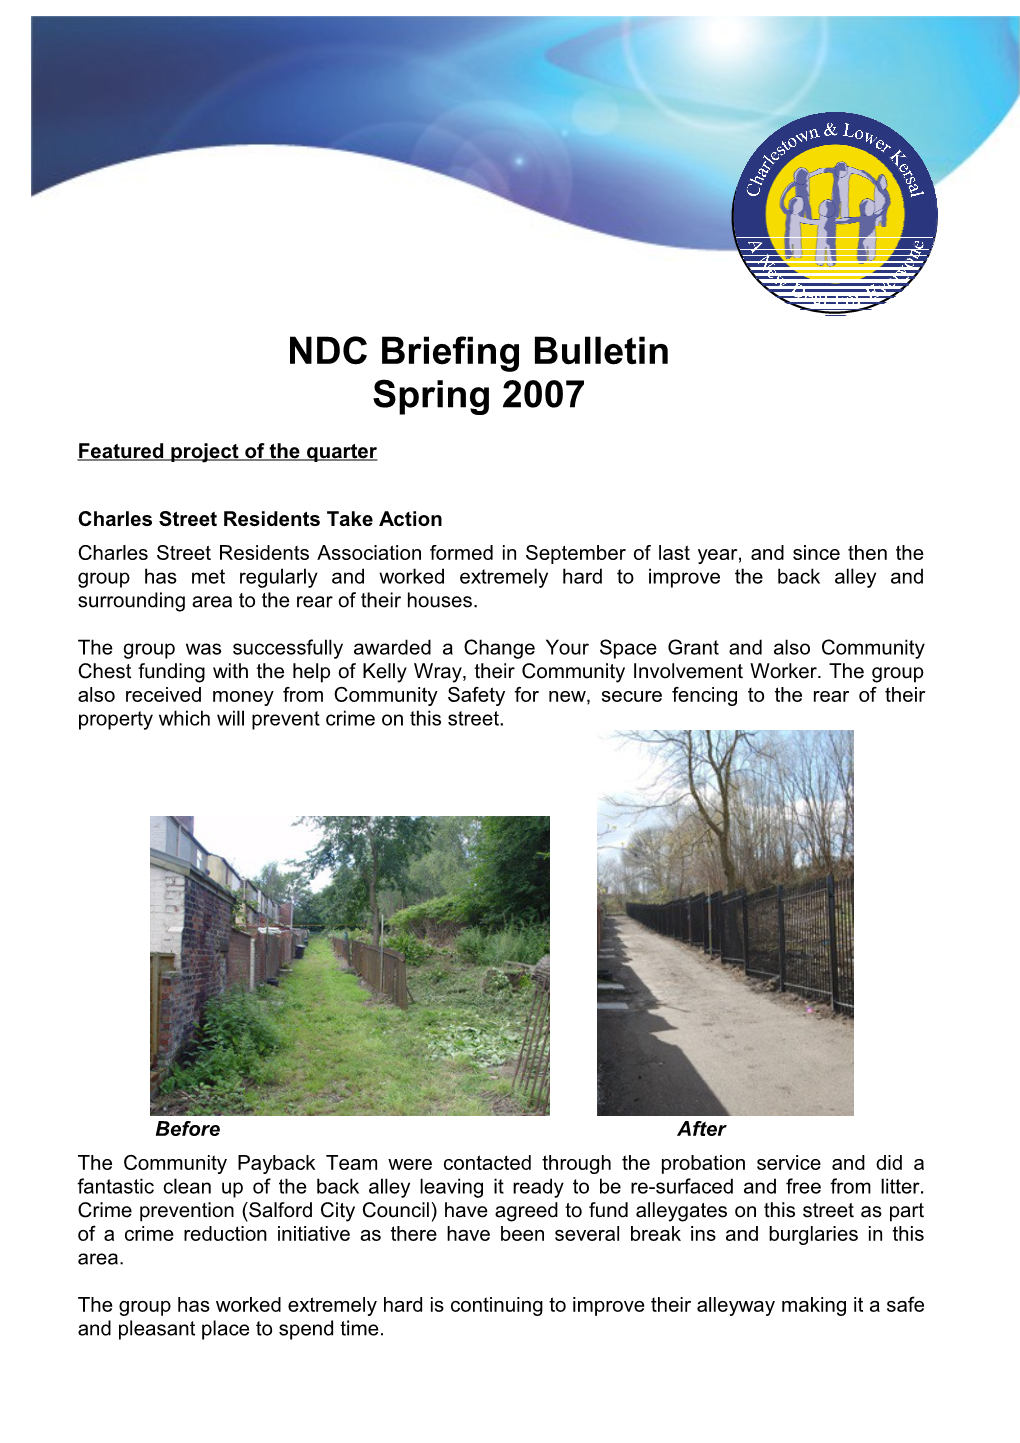 NDC Team Briefing Bulletin